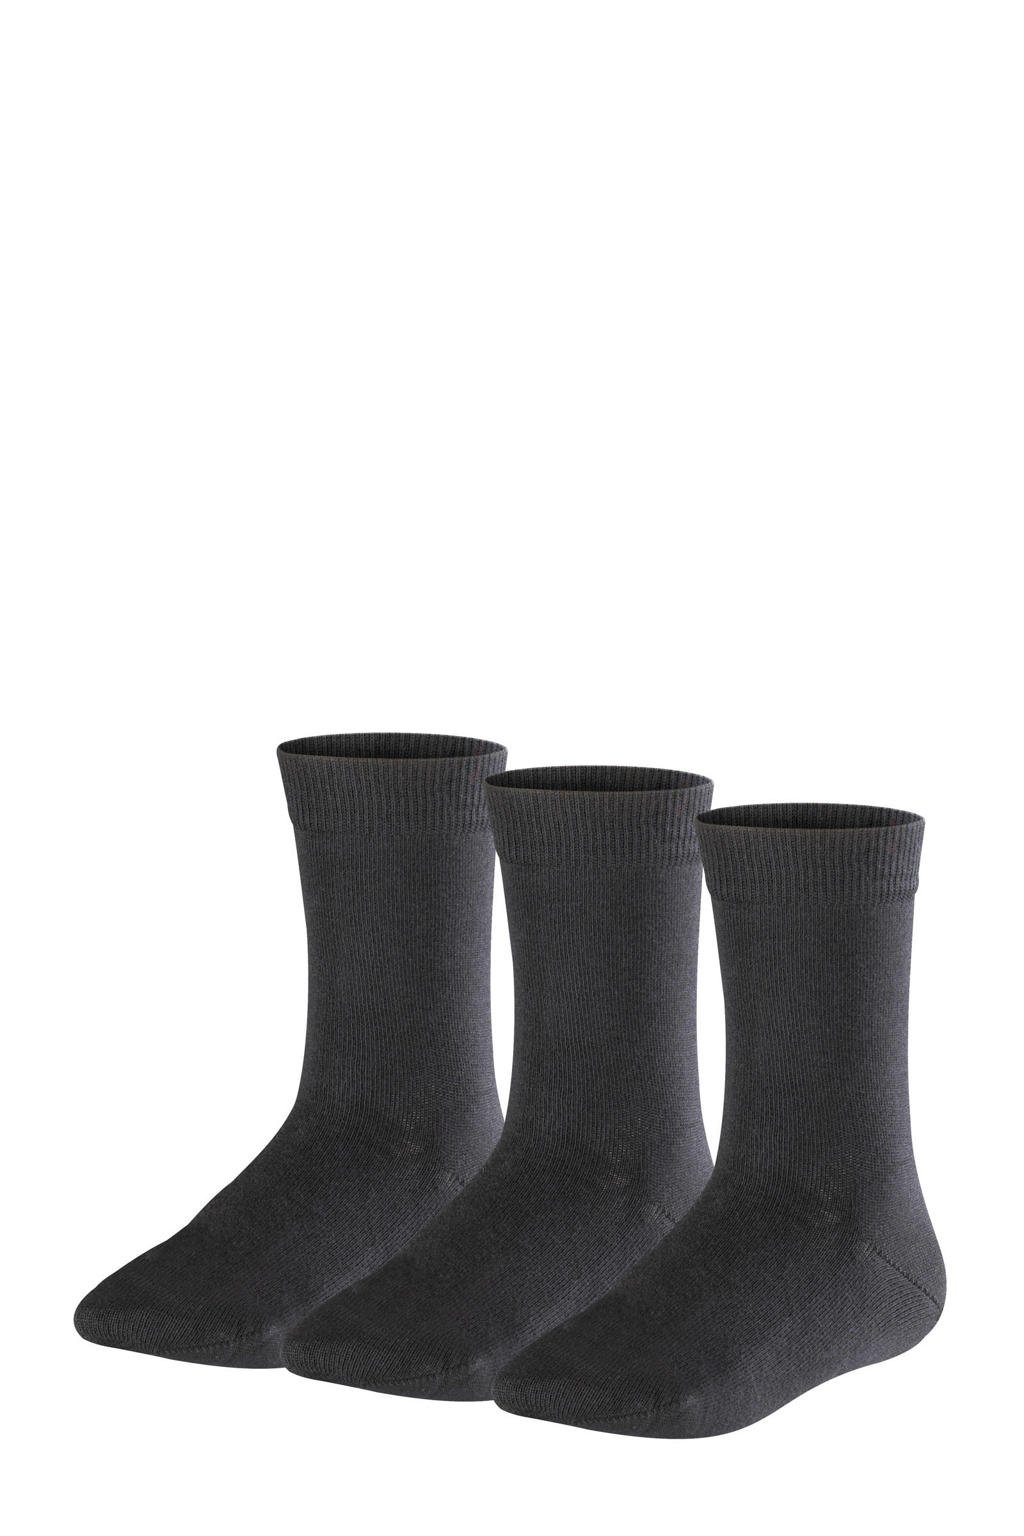 FALKE Family sokken - set van 3 zwart